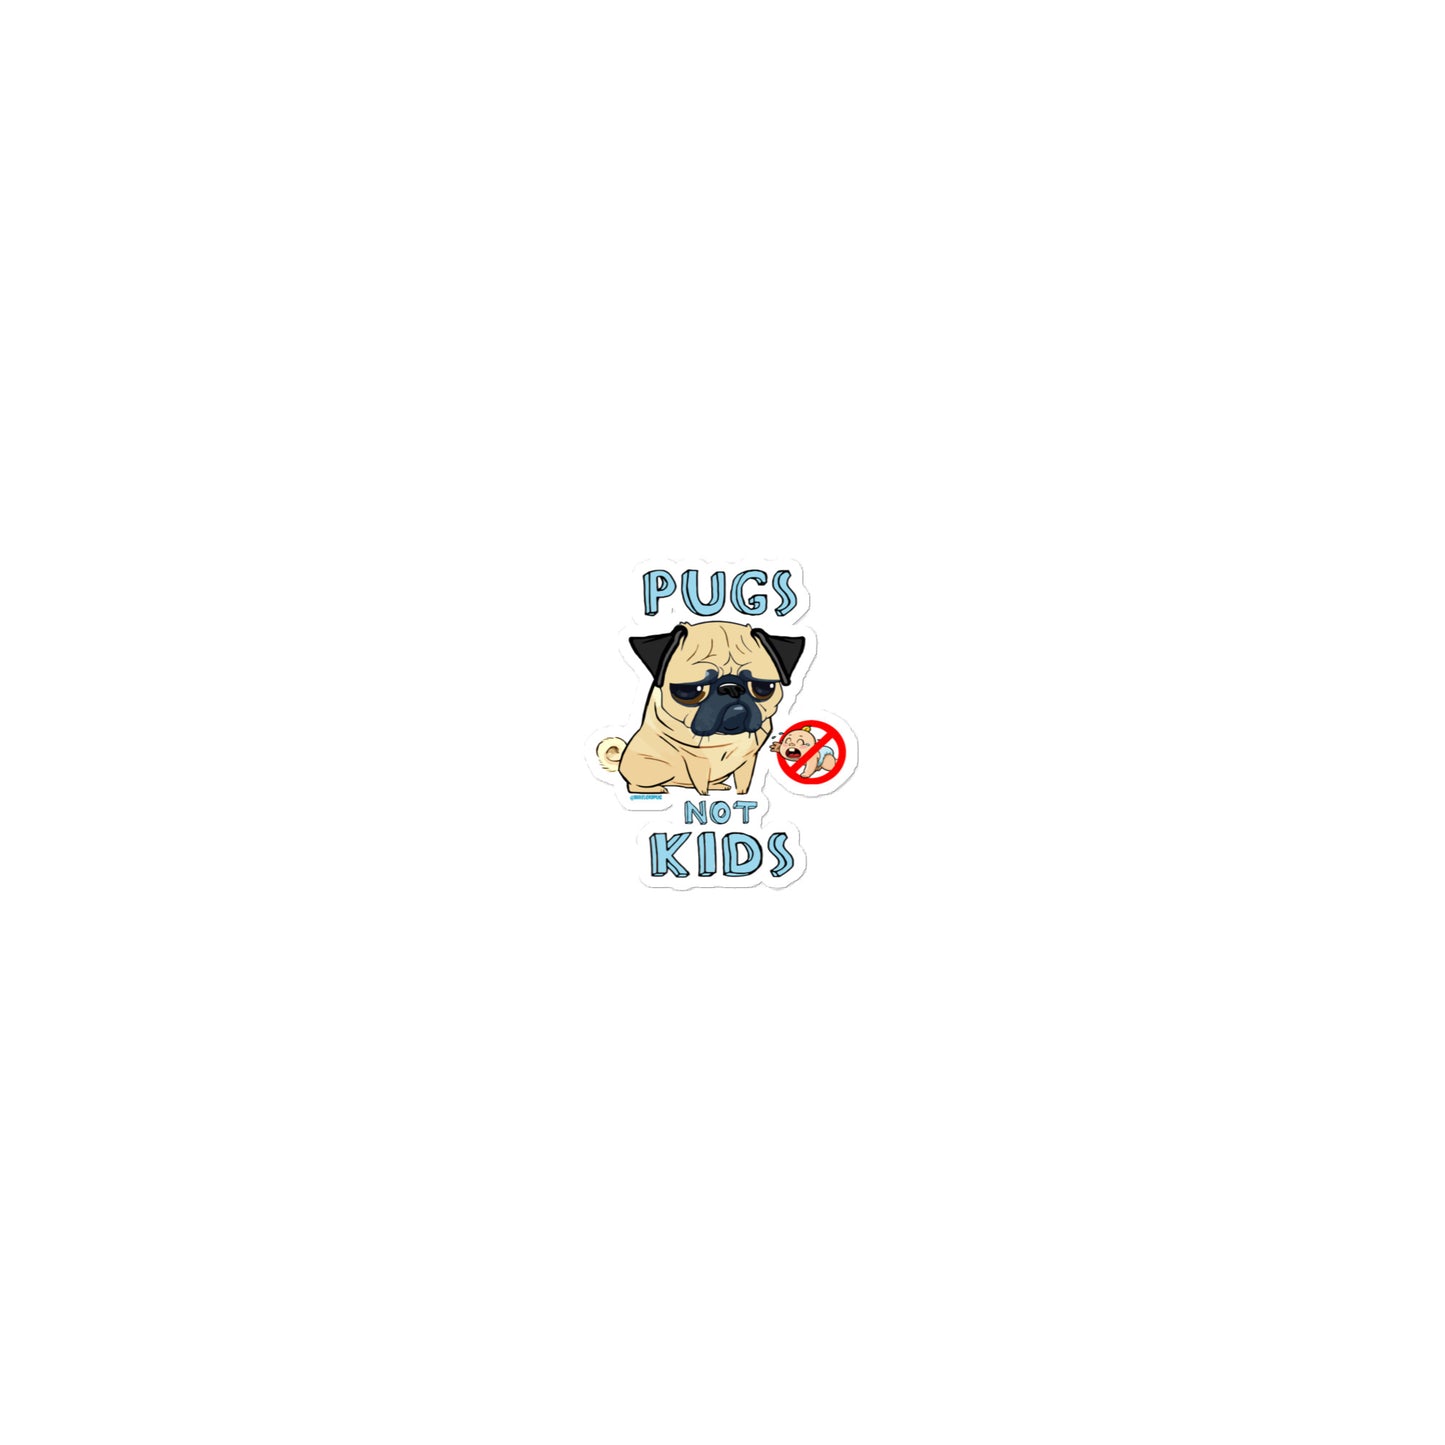 Pugs Not Kids Sticker